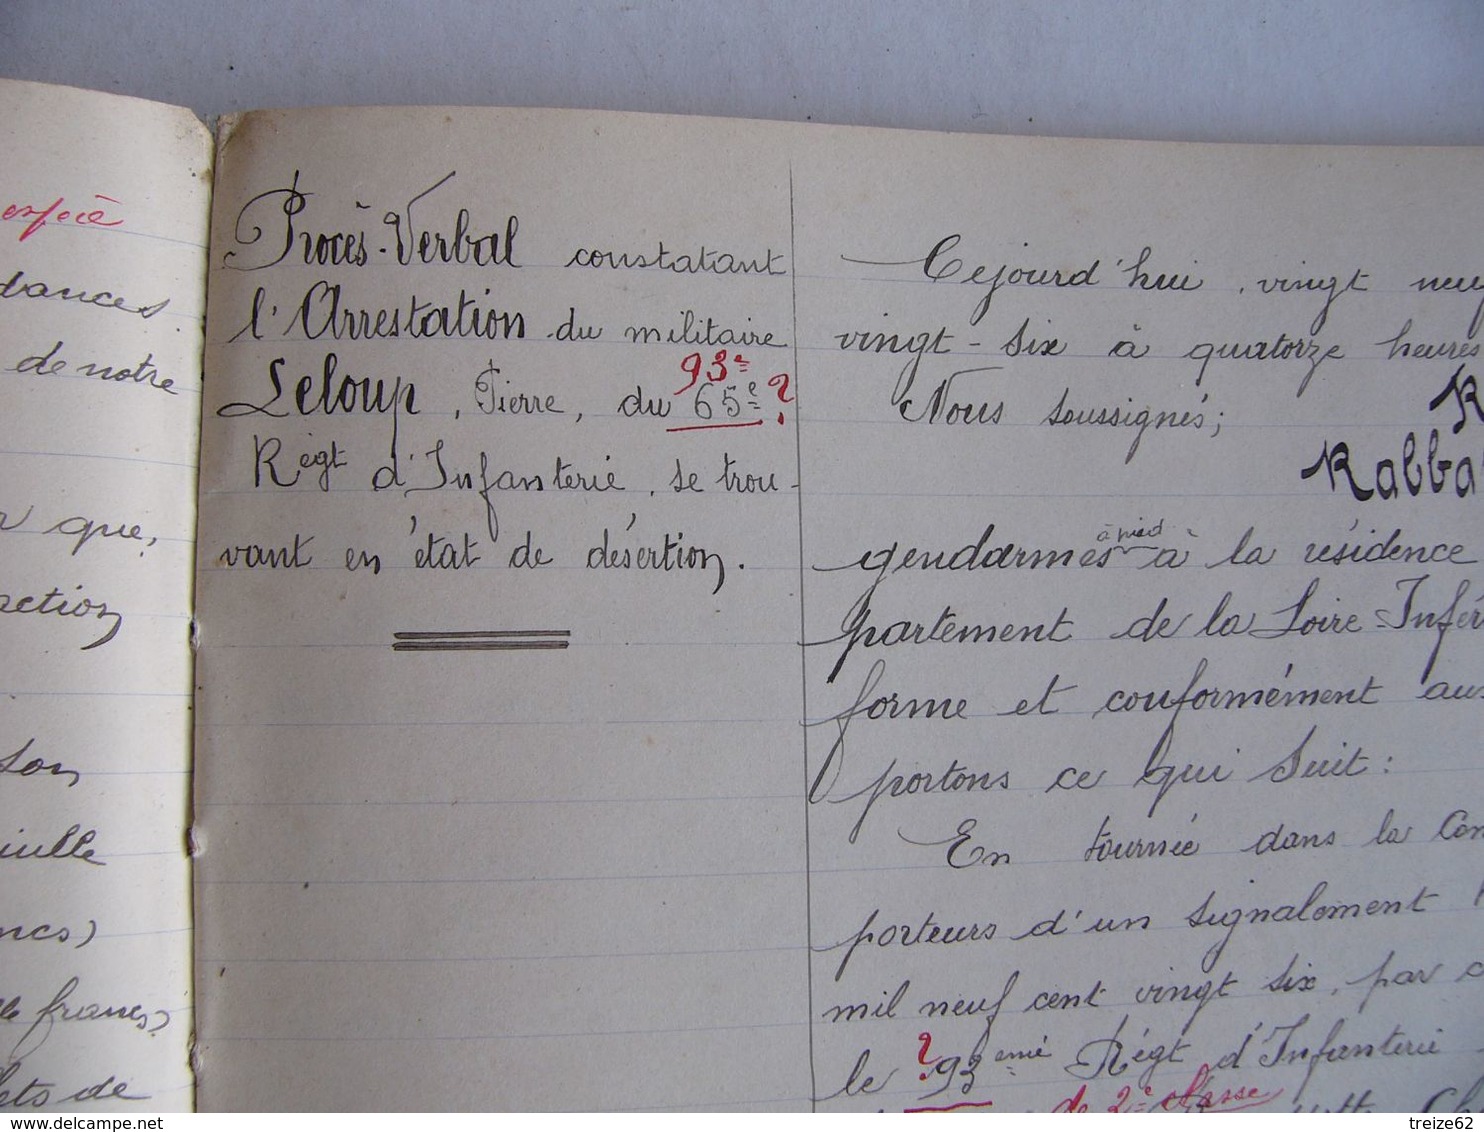 GENDARMERIE NATIONALE Cahier d' Instruction 1925 Saint-Nazaire Proces-verbaux meurtre infanticide vol Pornichet évasion